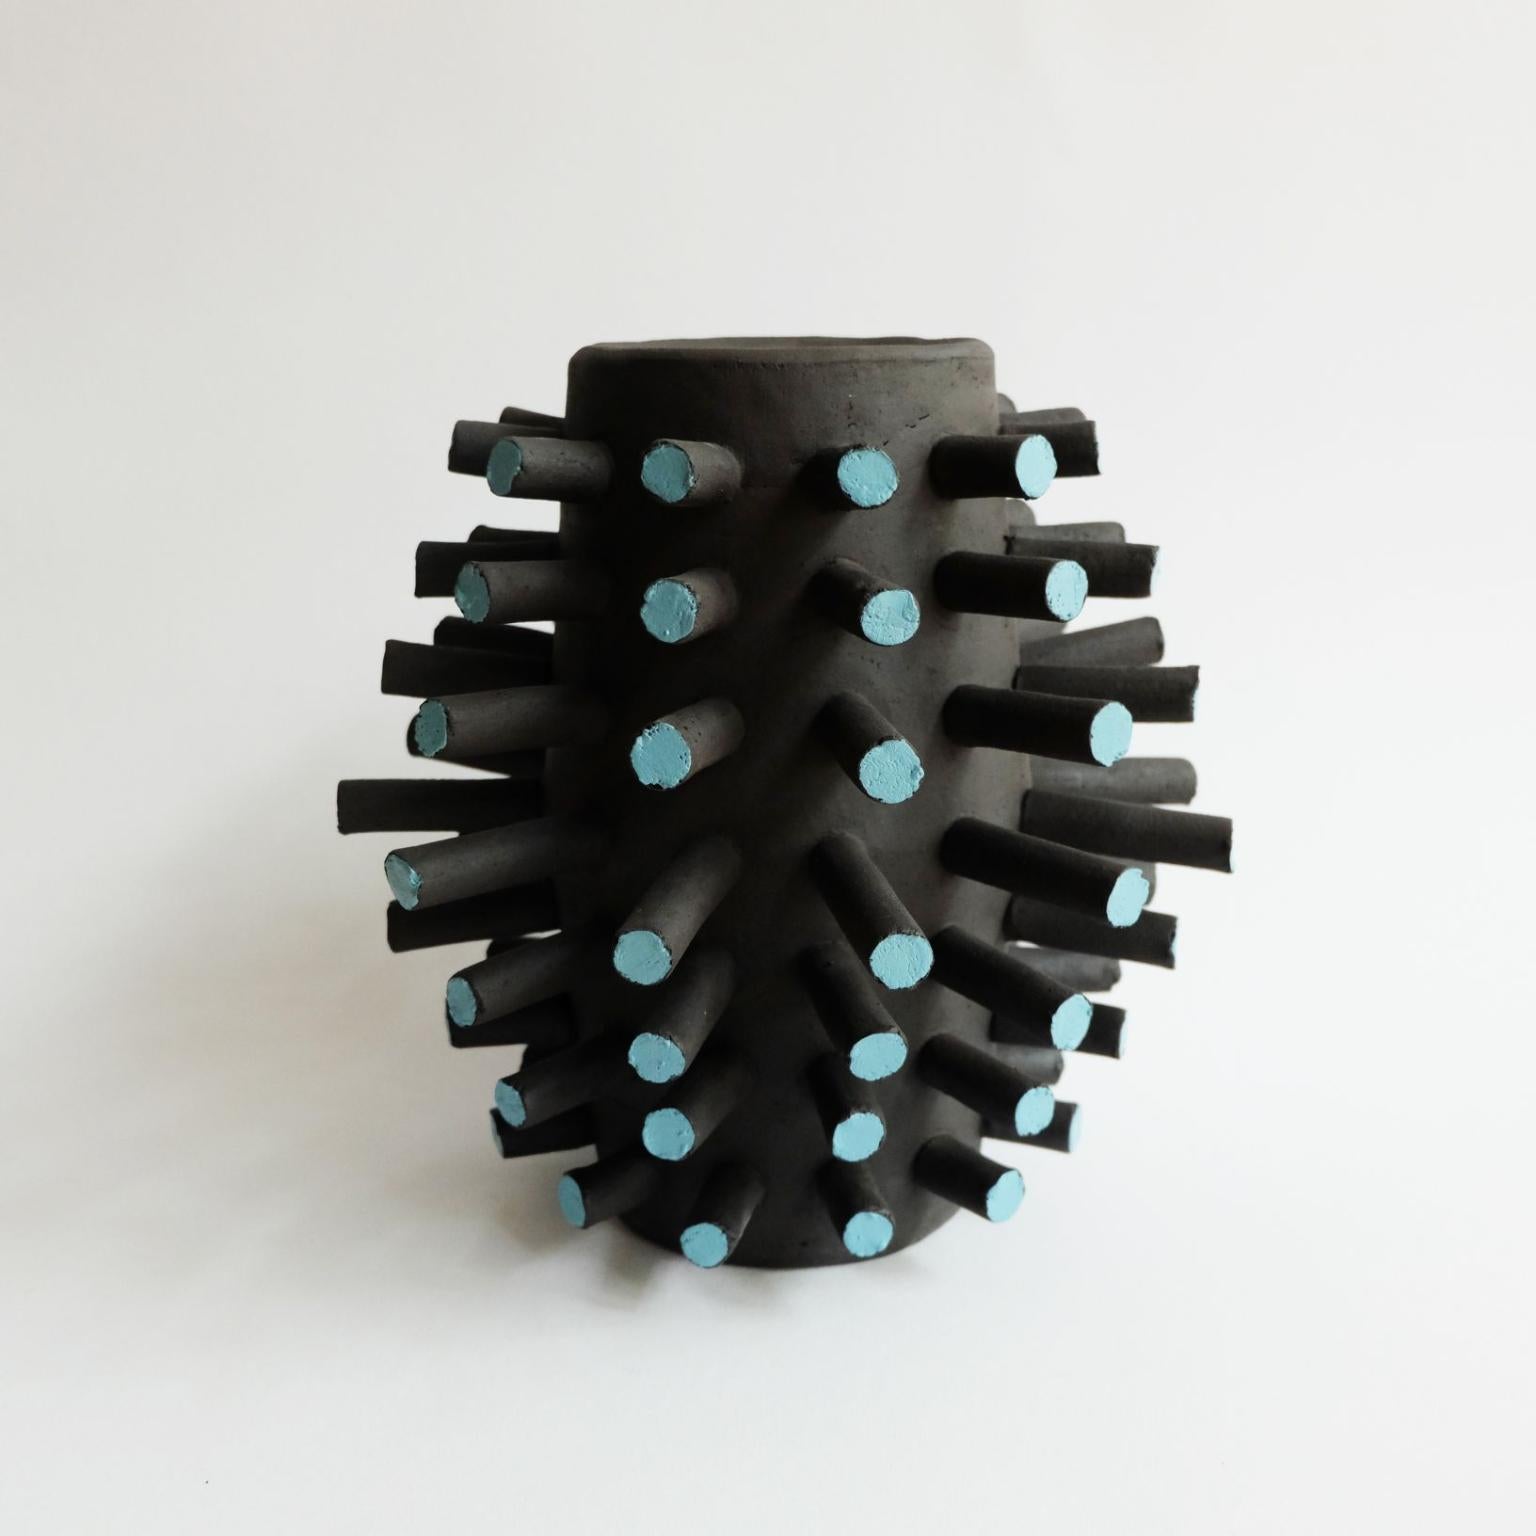 Skulpturales Cyto-Gefäß von Ia Kutateladze
Abmessungen: B 25 x H 25 cm
MATERIALIEN: Rohe schwarze Tonerde

